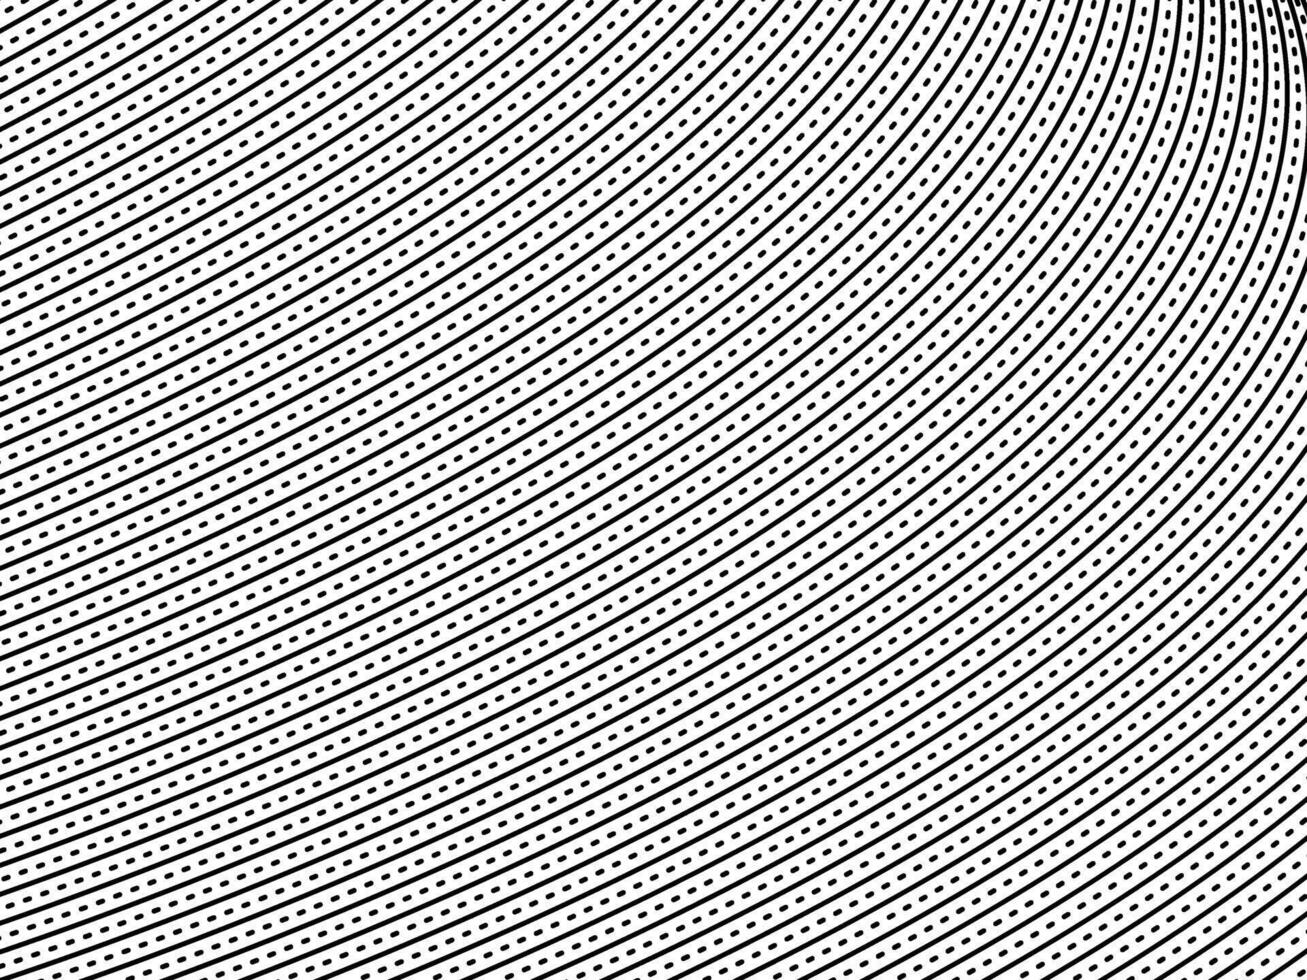 ótico ilusão criada a partir de artístico linhas motivos padrão, pode usar para decoração, fundo, ornamentado, tecido, moda, têxtil, tapete padrão, telha ou gráfico Projeto elemento vetor